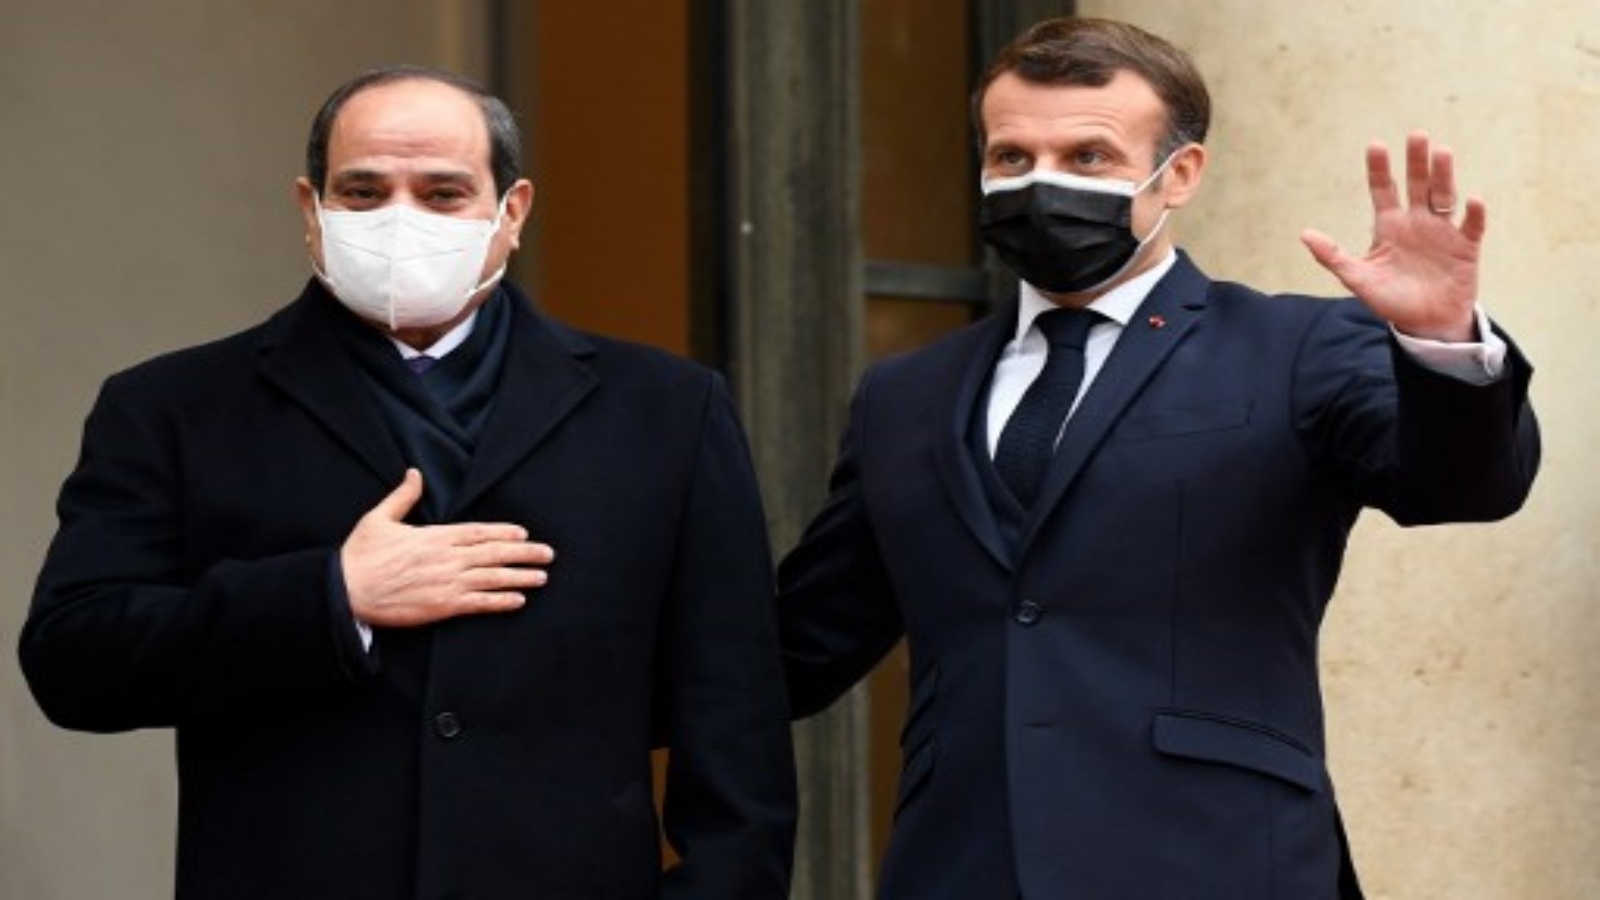 الرئيس الفرنسي إيمانويل ماكرون (إلى اليمين) يرحب بنظيره المصري عبد الفتاح السيسي في قصر الإليزيه الرئاسي في 7 ديسمبر 2020 في باريس 